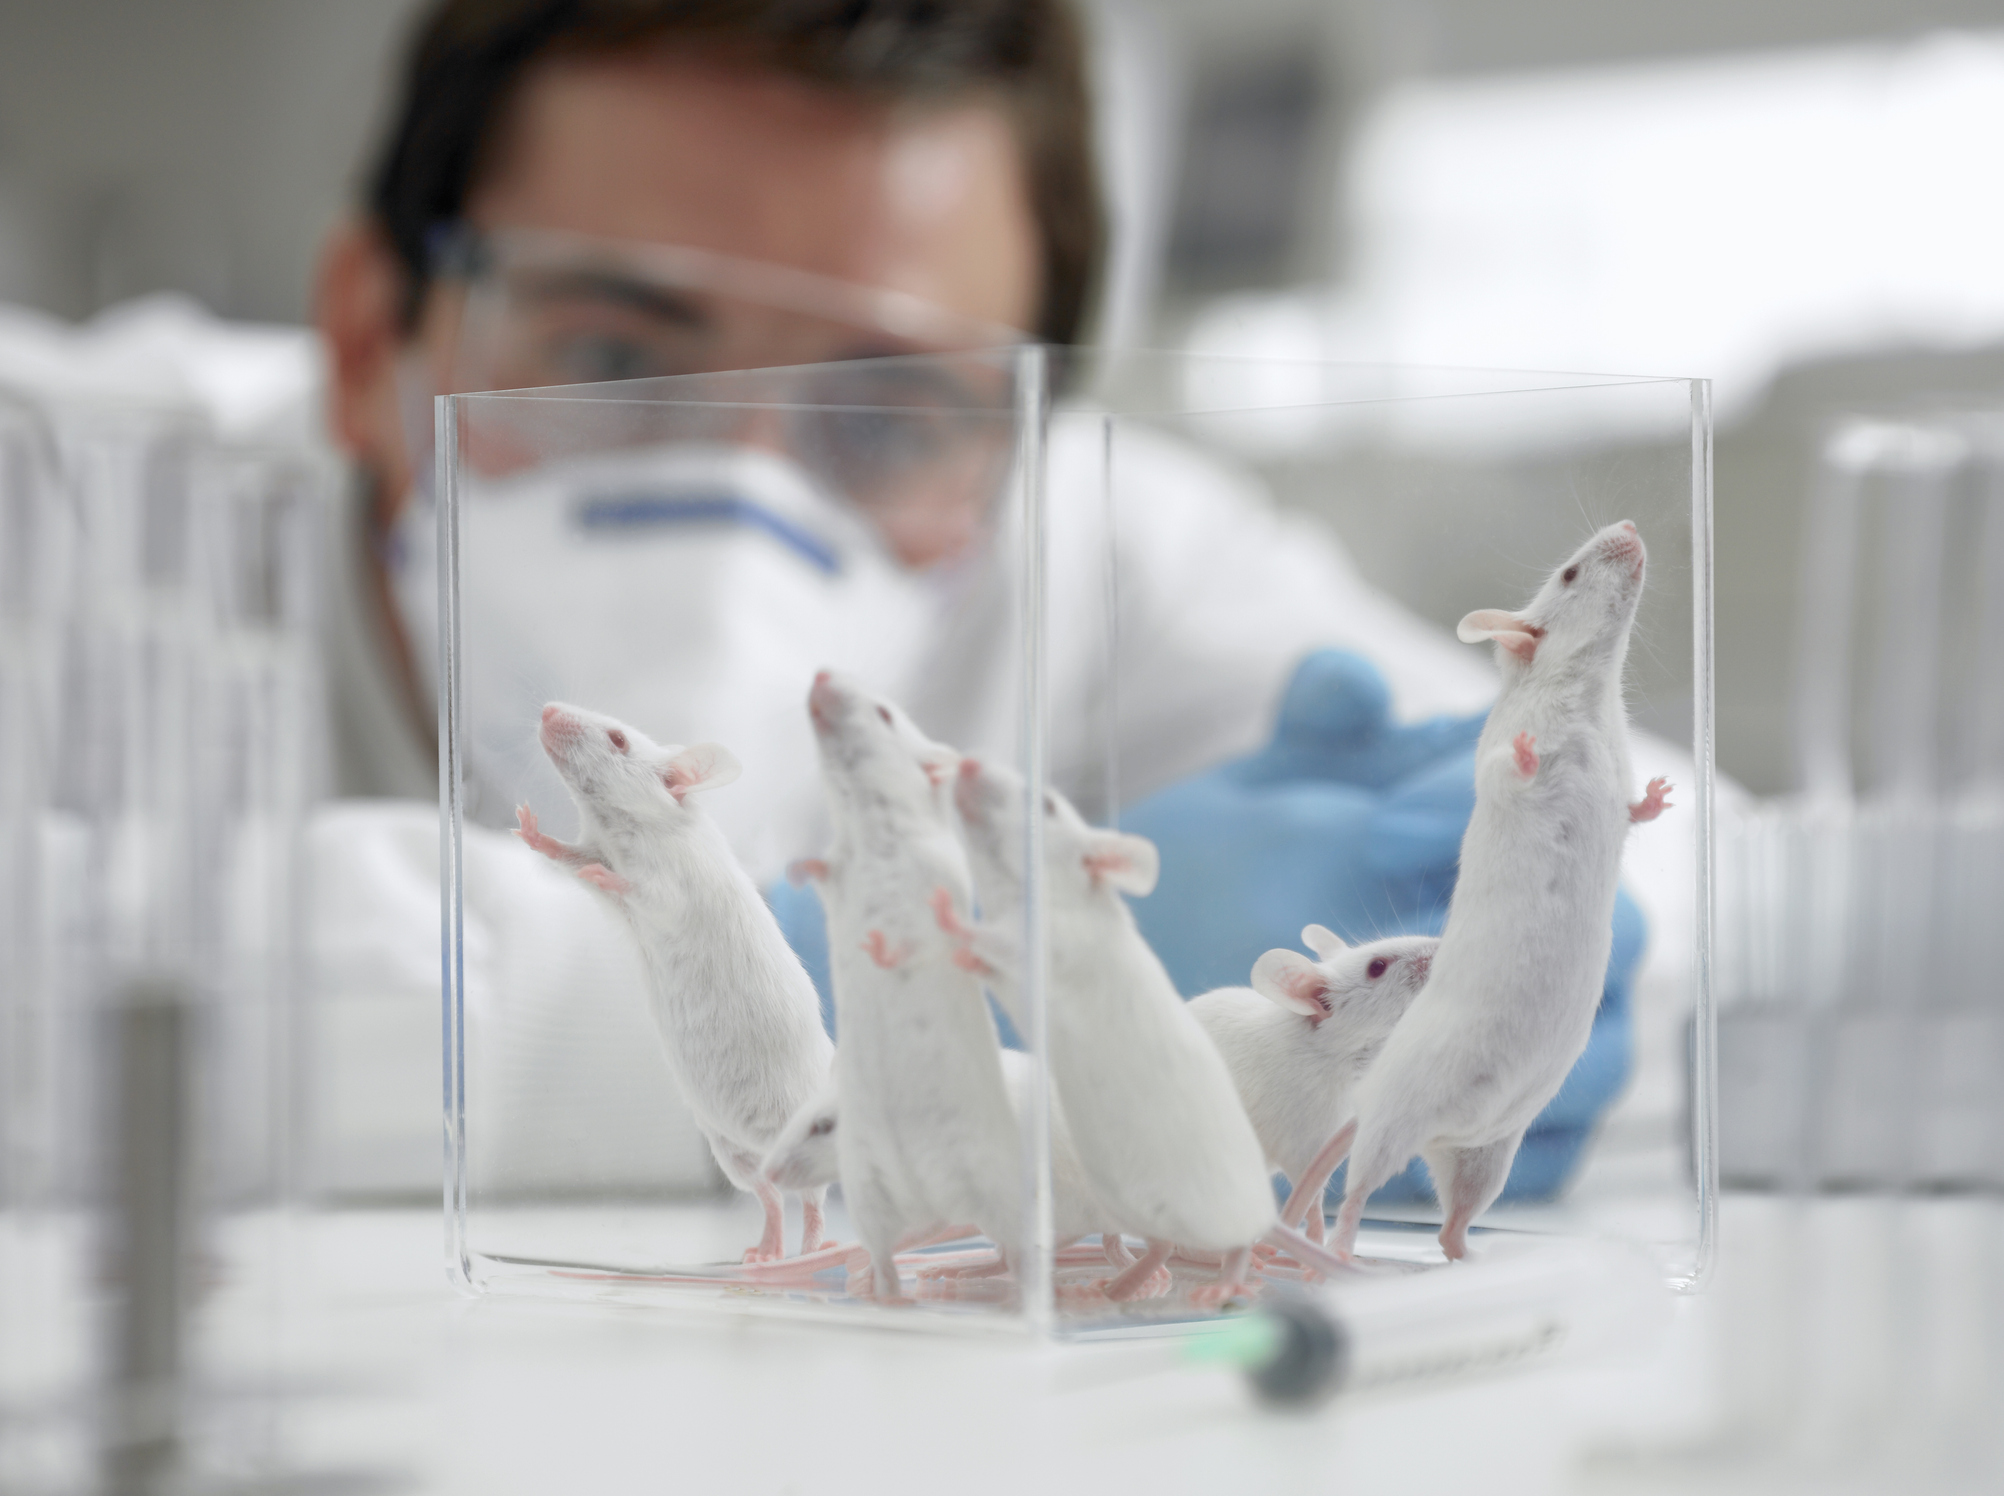 La vacuna fue evaluada en ratones y funcionó. Pero habrá que demostrar seguridad y eficacia en humanos (Getty Images)